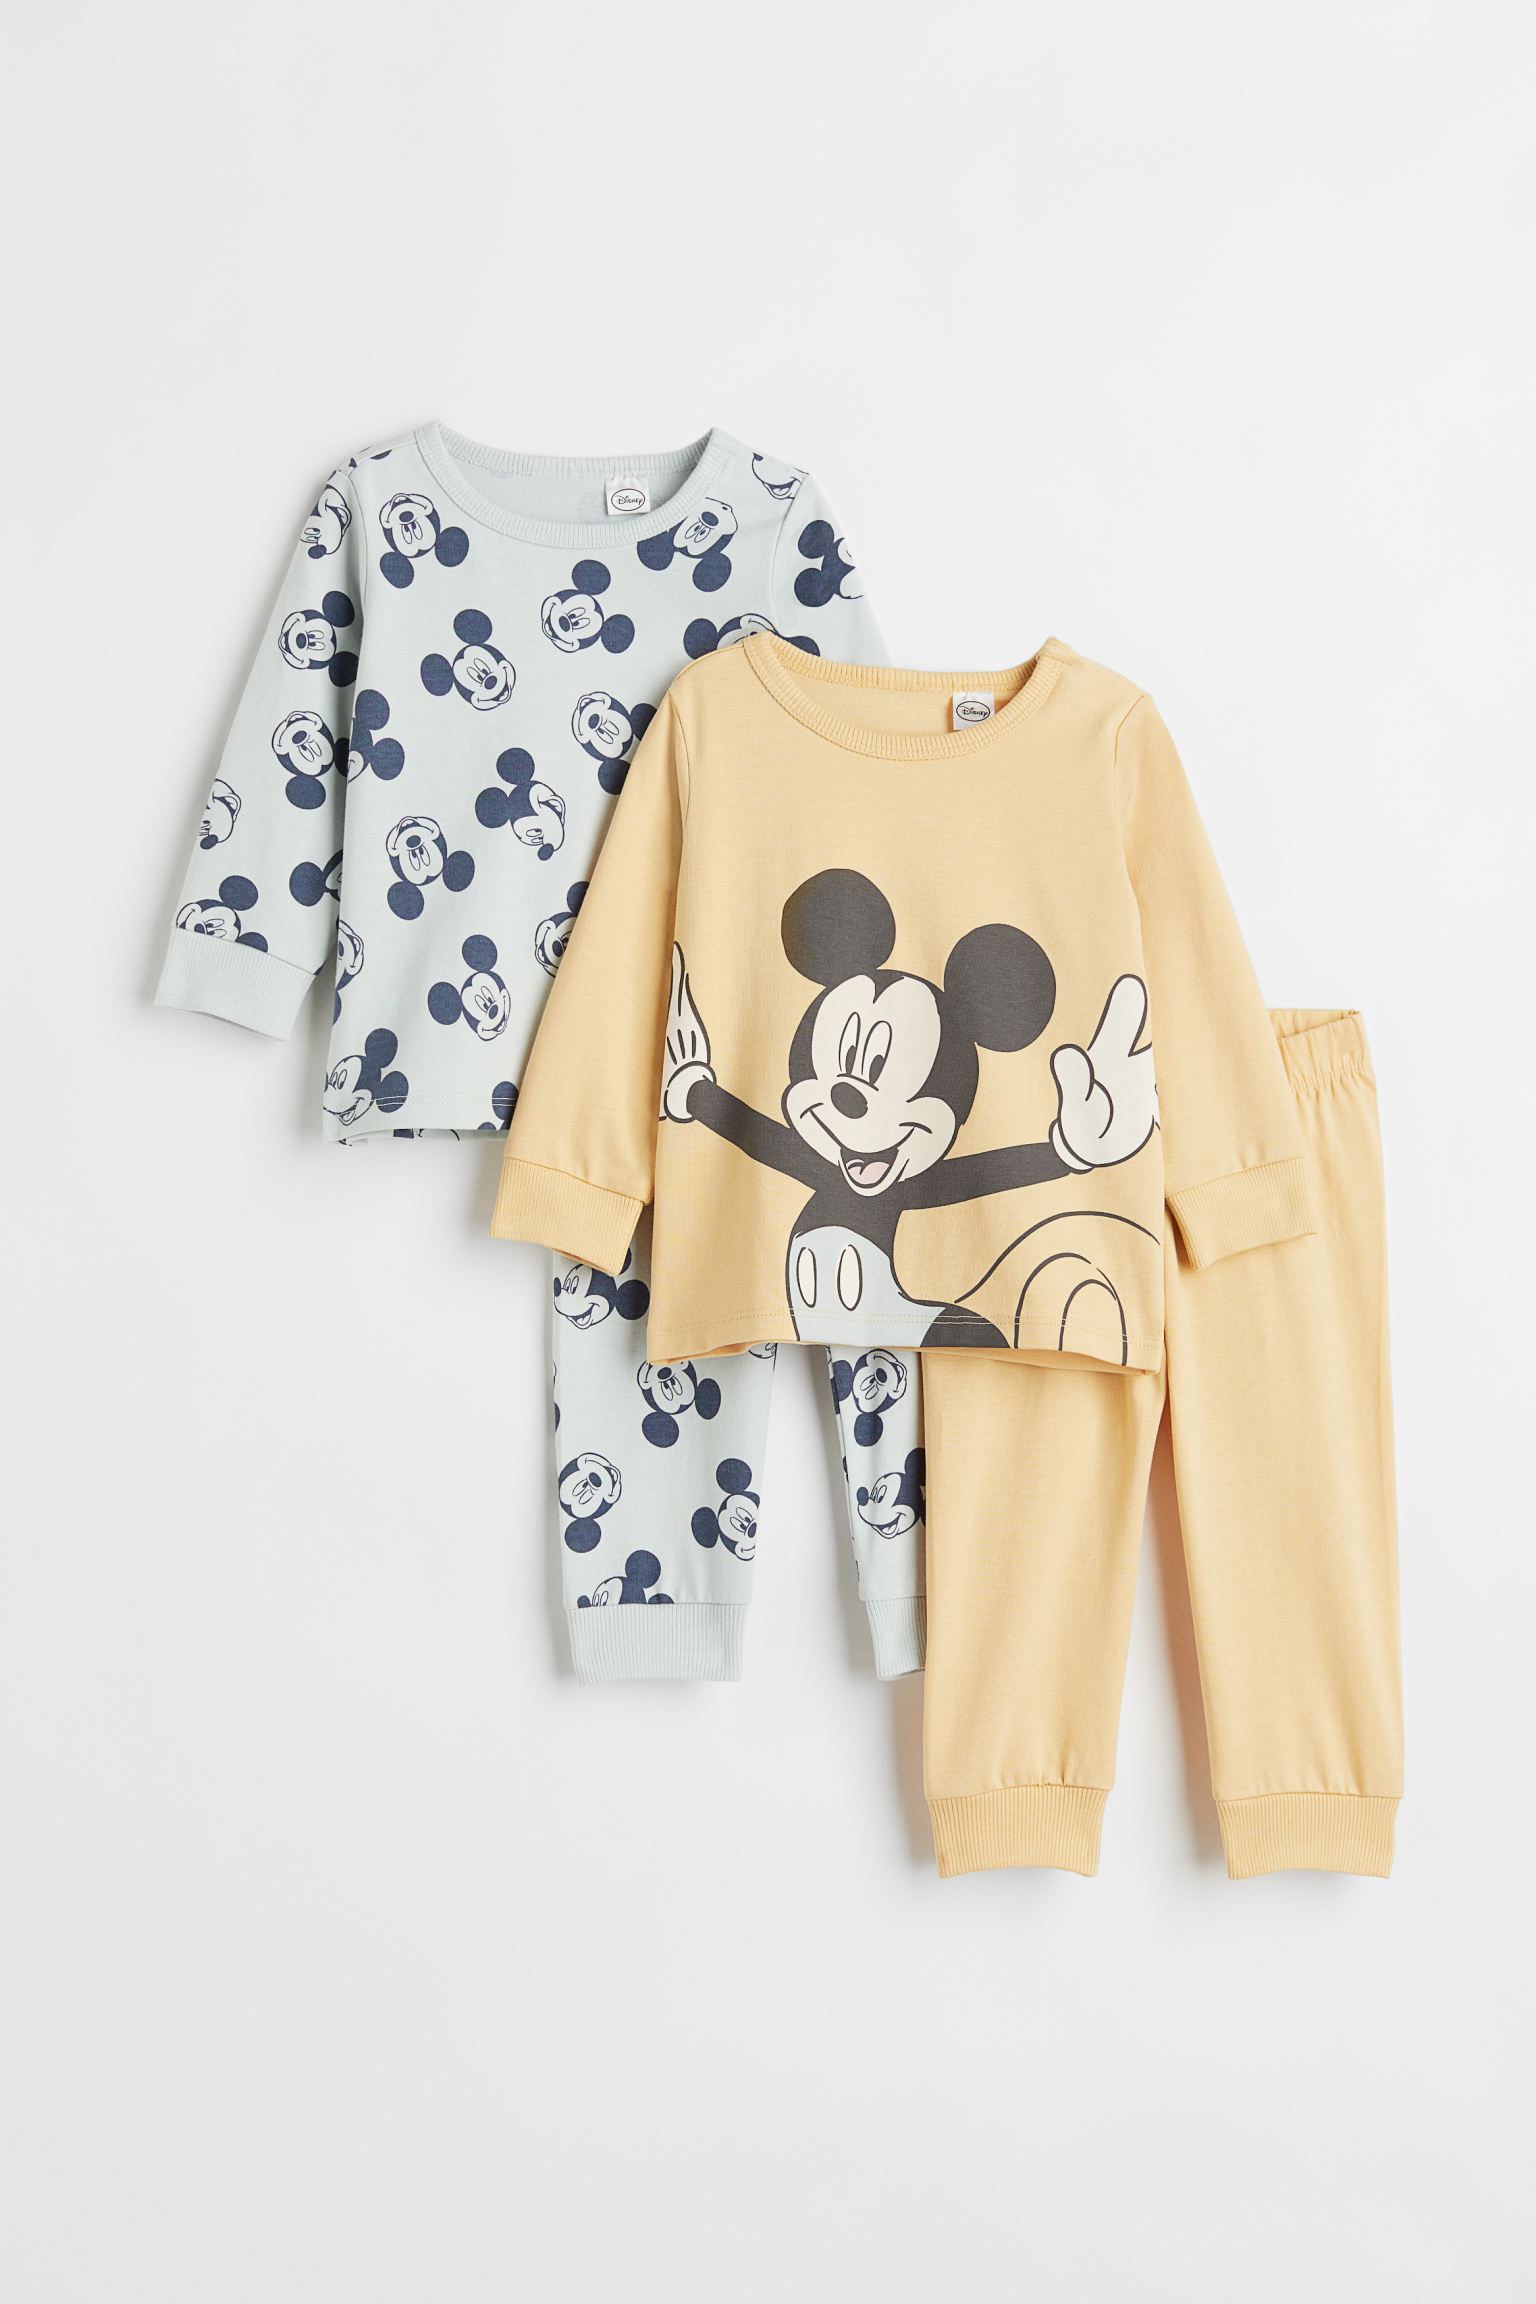 2 комплекта пижам из джерси H&M для мальчиков 56 Желтый/Микки Маус (доставка из-за рубежа)